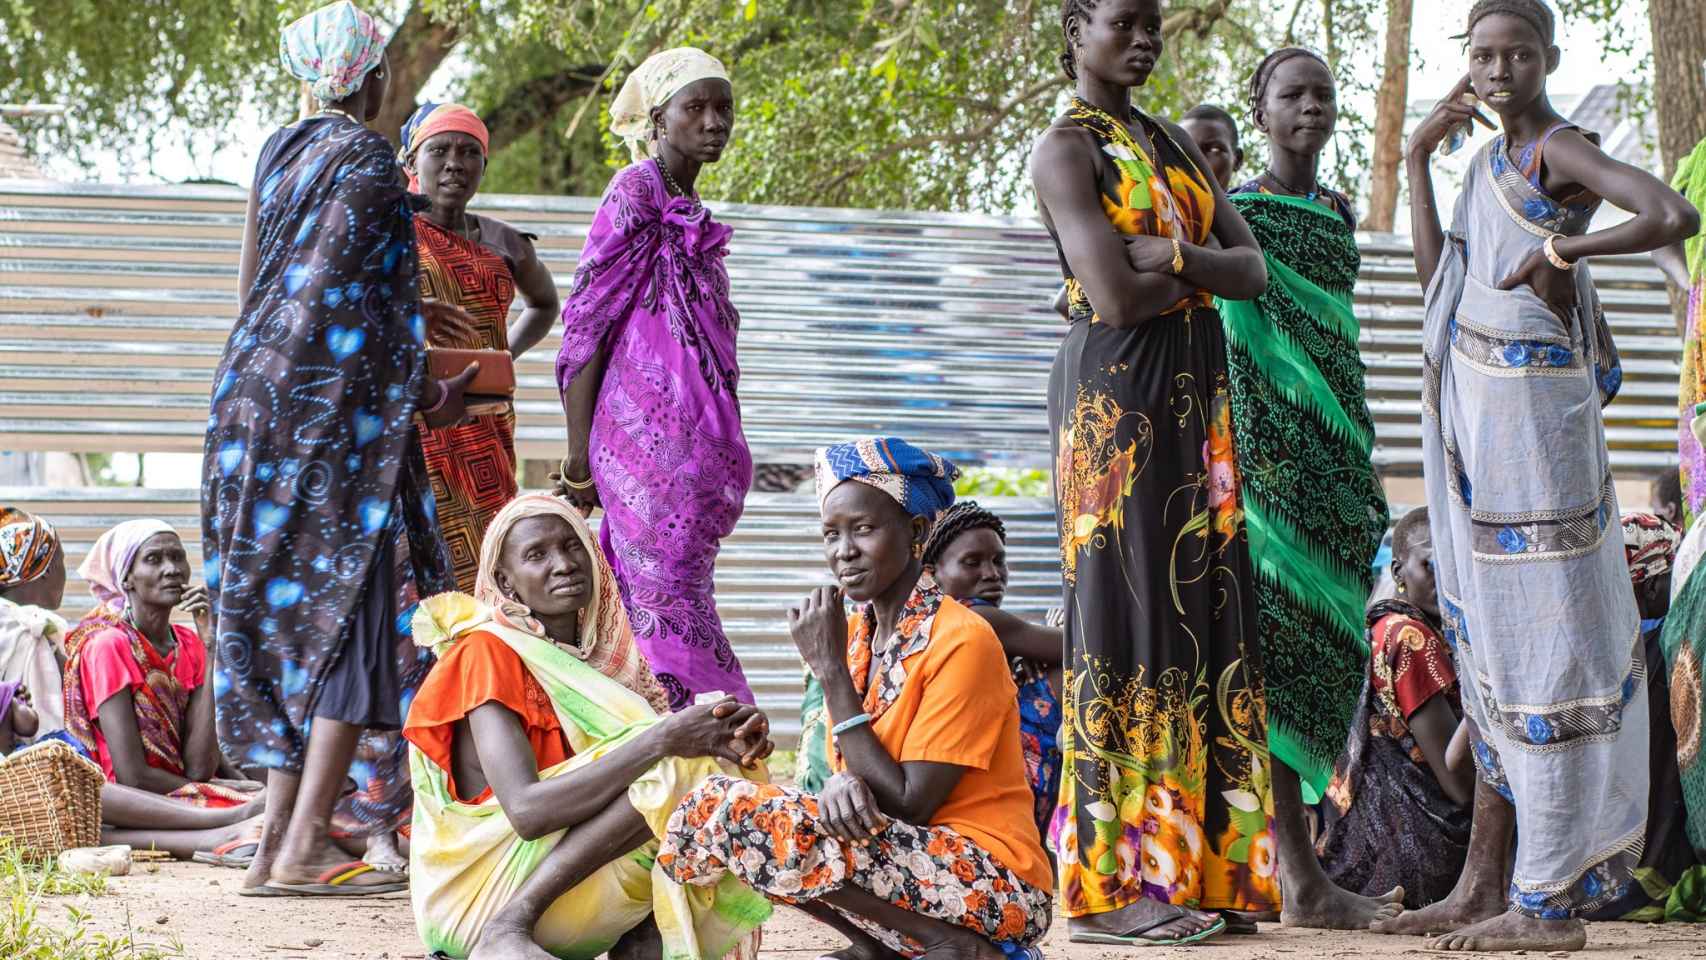 Los desplazados internos en Keich Kuon, un área remota del estado del Alto Nilo en Sudán del Sur, dependen de la asistencia alimentaria del PMA y World Vision, que a menudo puede verse obstaculizada por el mal tiempo y las inundaciones.